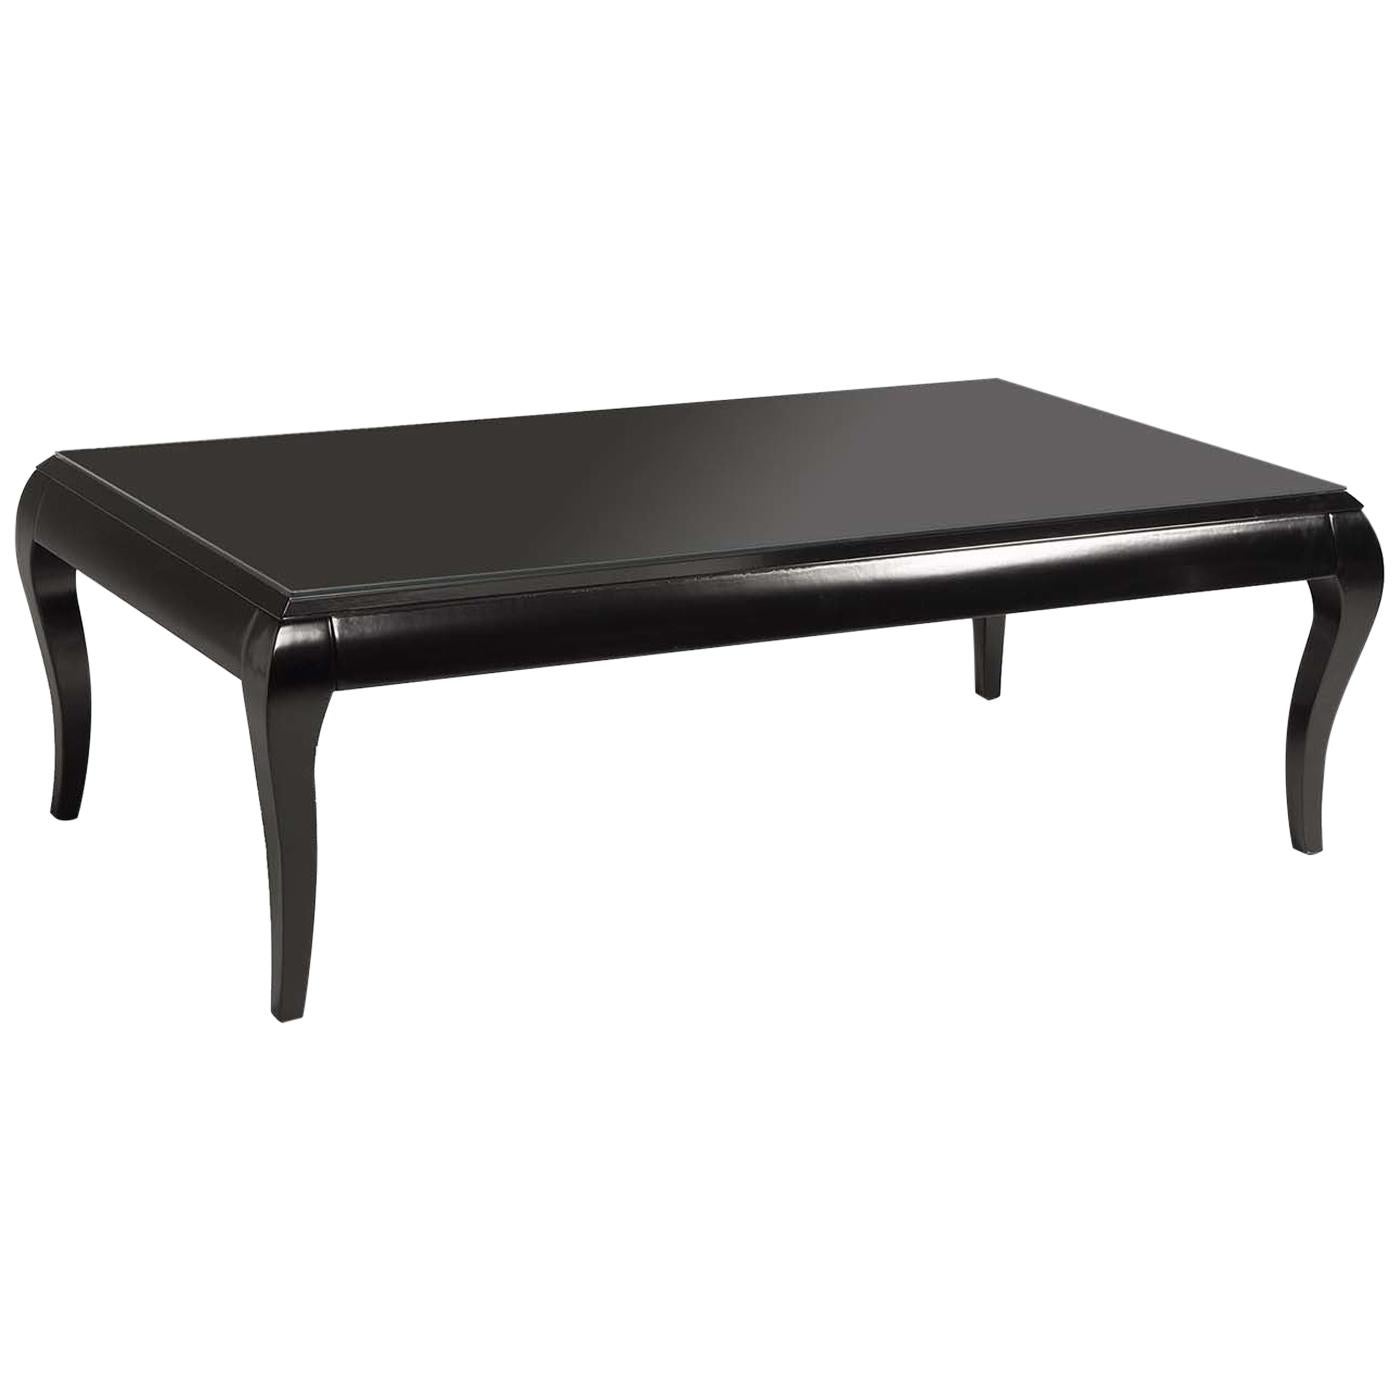 Table basse rectangulaire Oscar noire